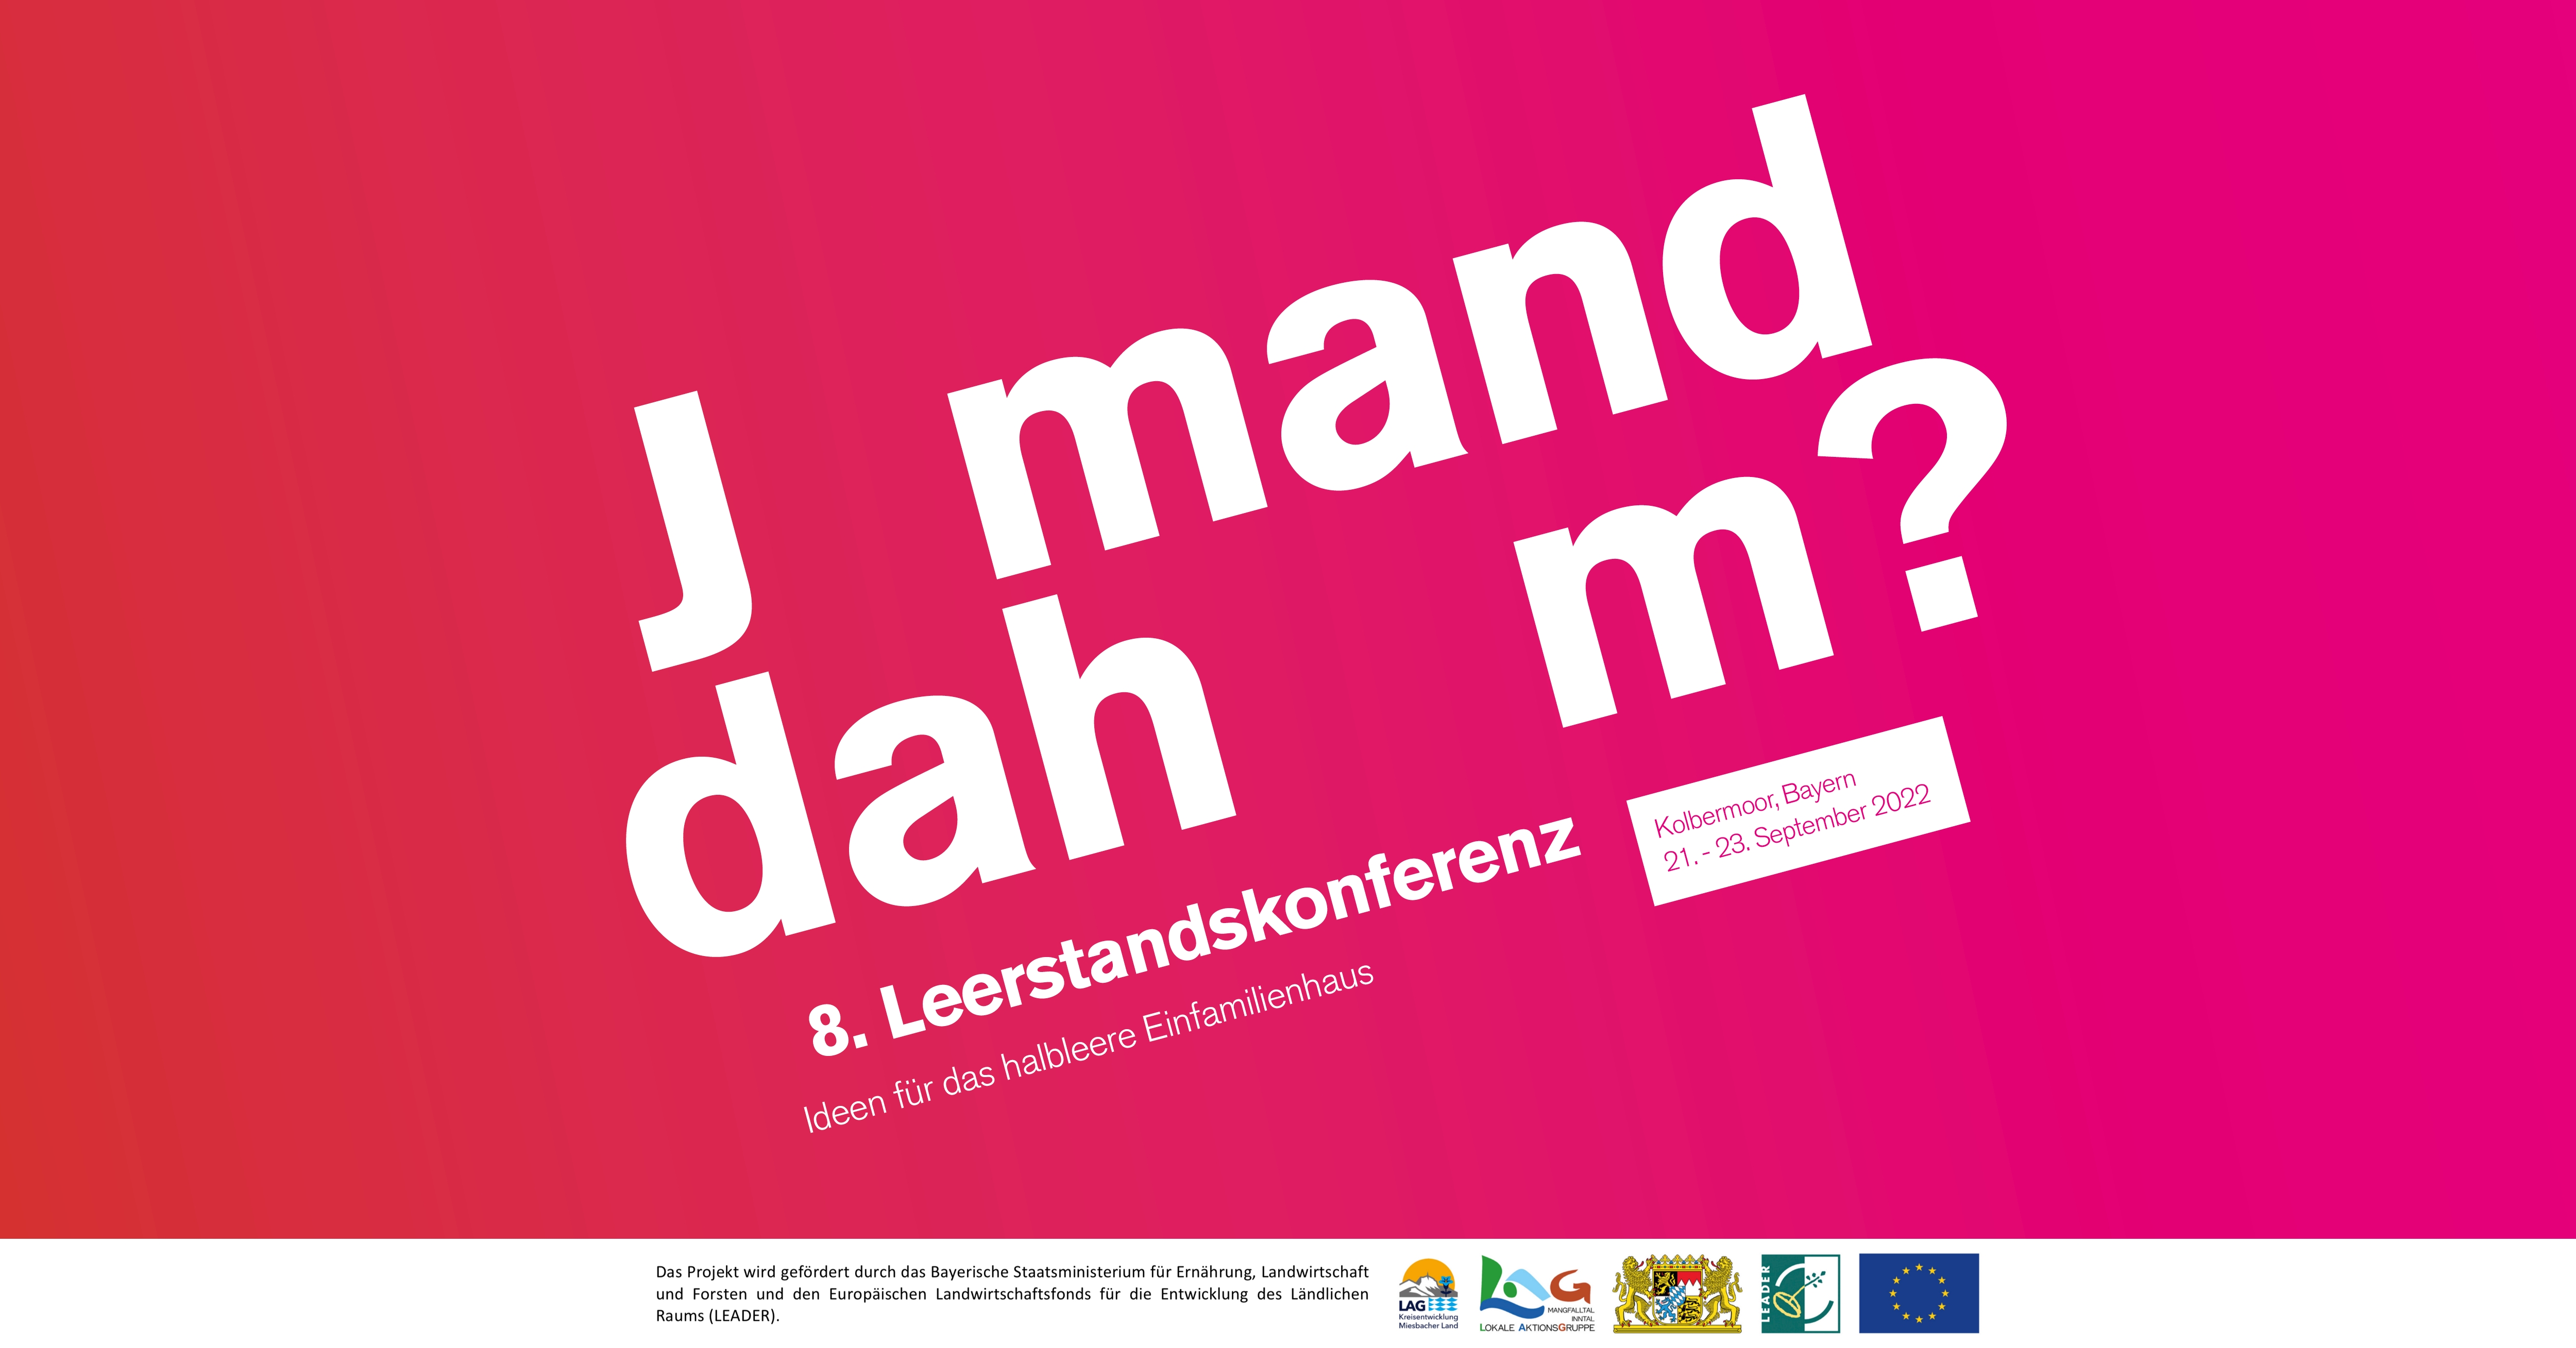 'Jemand daheim?' - Leerstandskonferenz vom 21. bis 23. September im Kesselhaus Kolbermoor